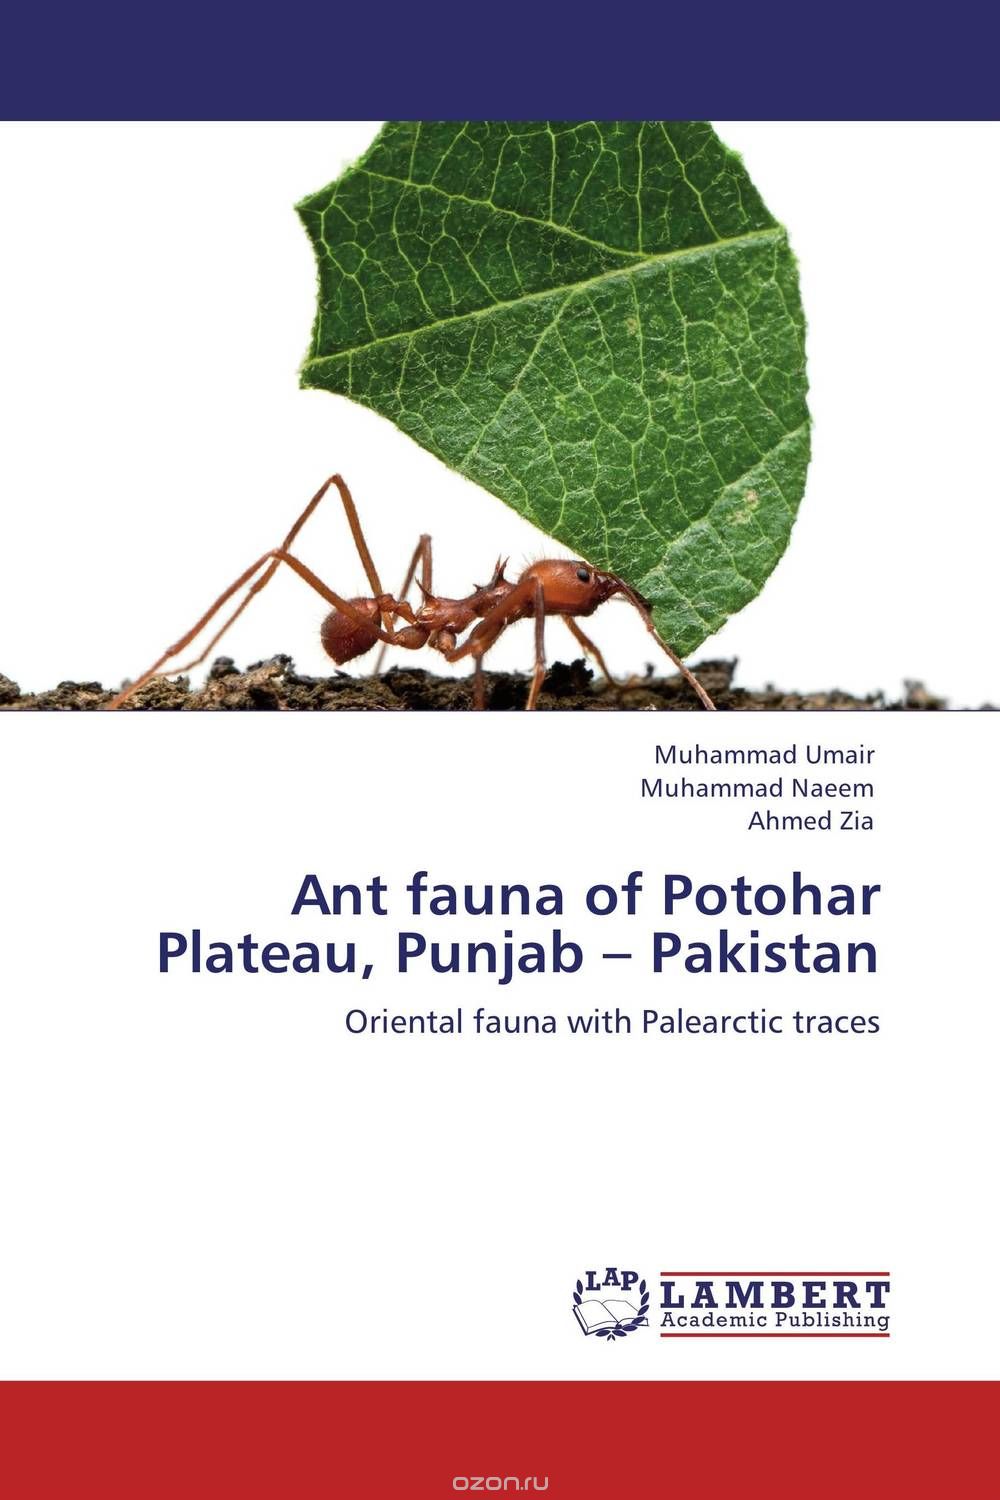 Ant fauna of Potohar Plateau, Punjab – Pakistan